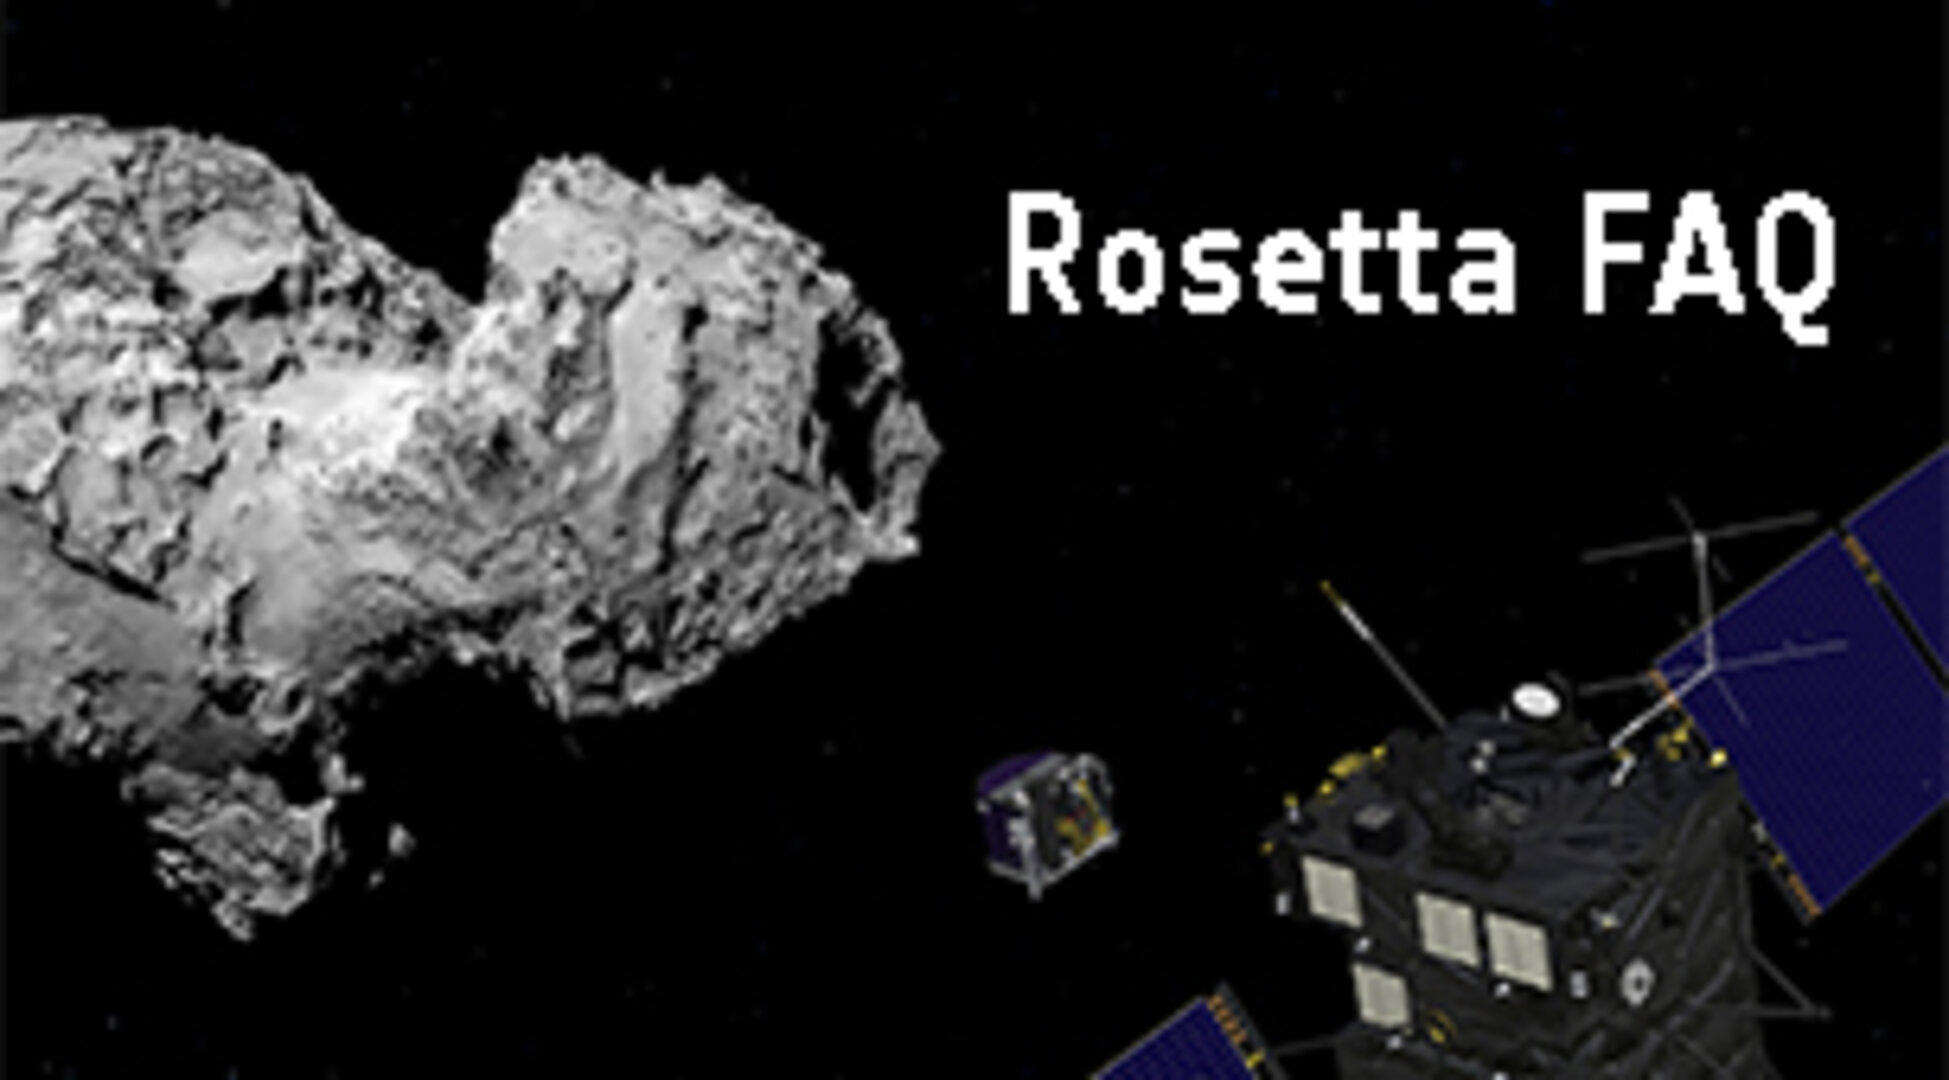 Rosetta FAQ